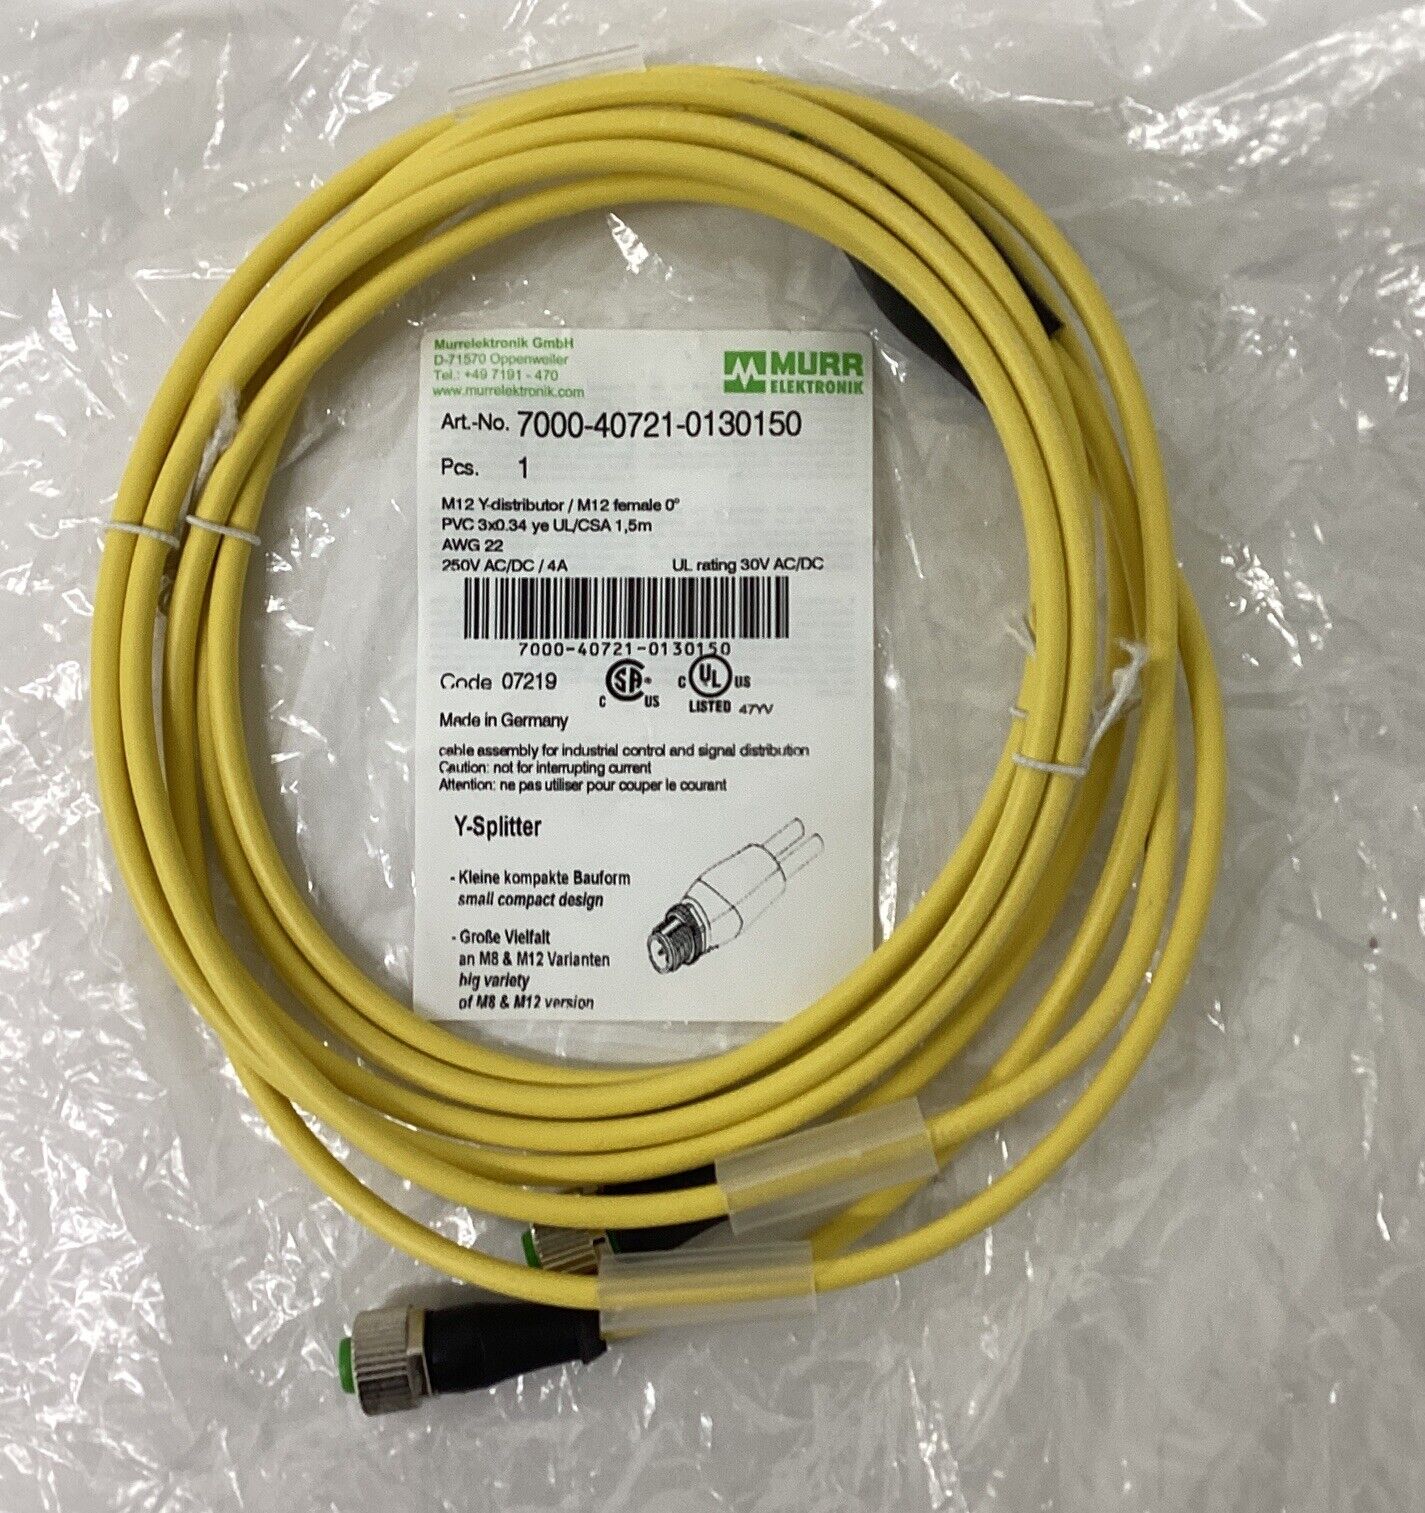 Murr 7000-40721-0130150 M12 Y-Splitter 3-Wire 1.5M (CL379)